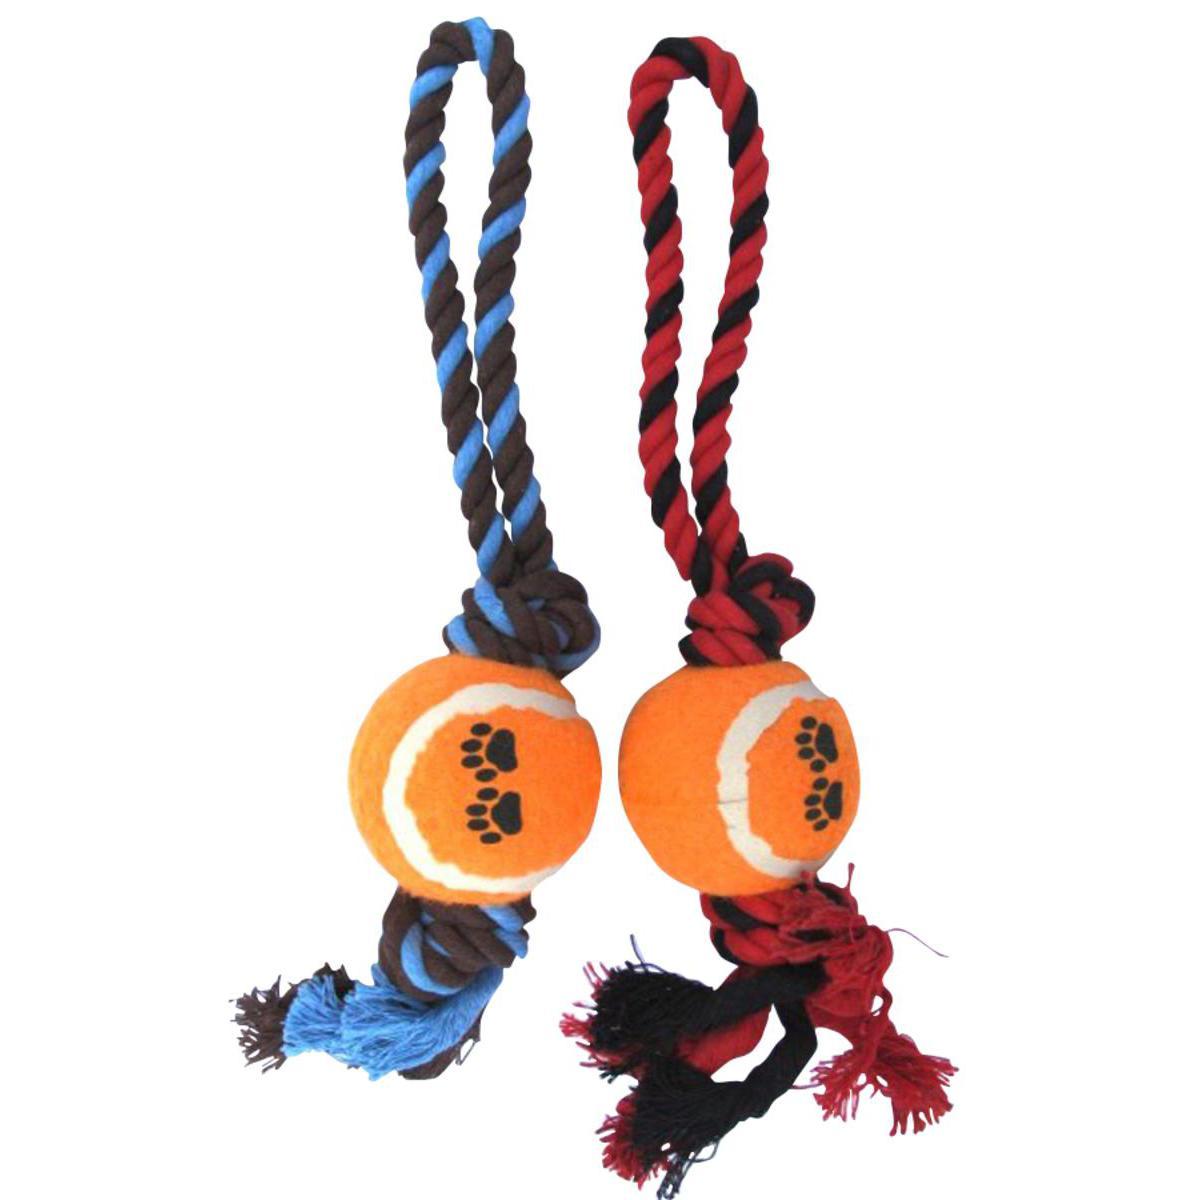 Jouet corde + balle - Coton - 30 x 6 x H 6 cm - Noir, rouge, bleu ou marron